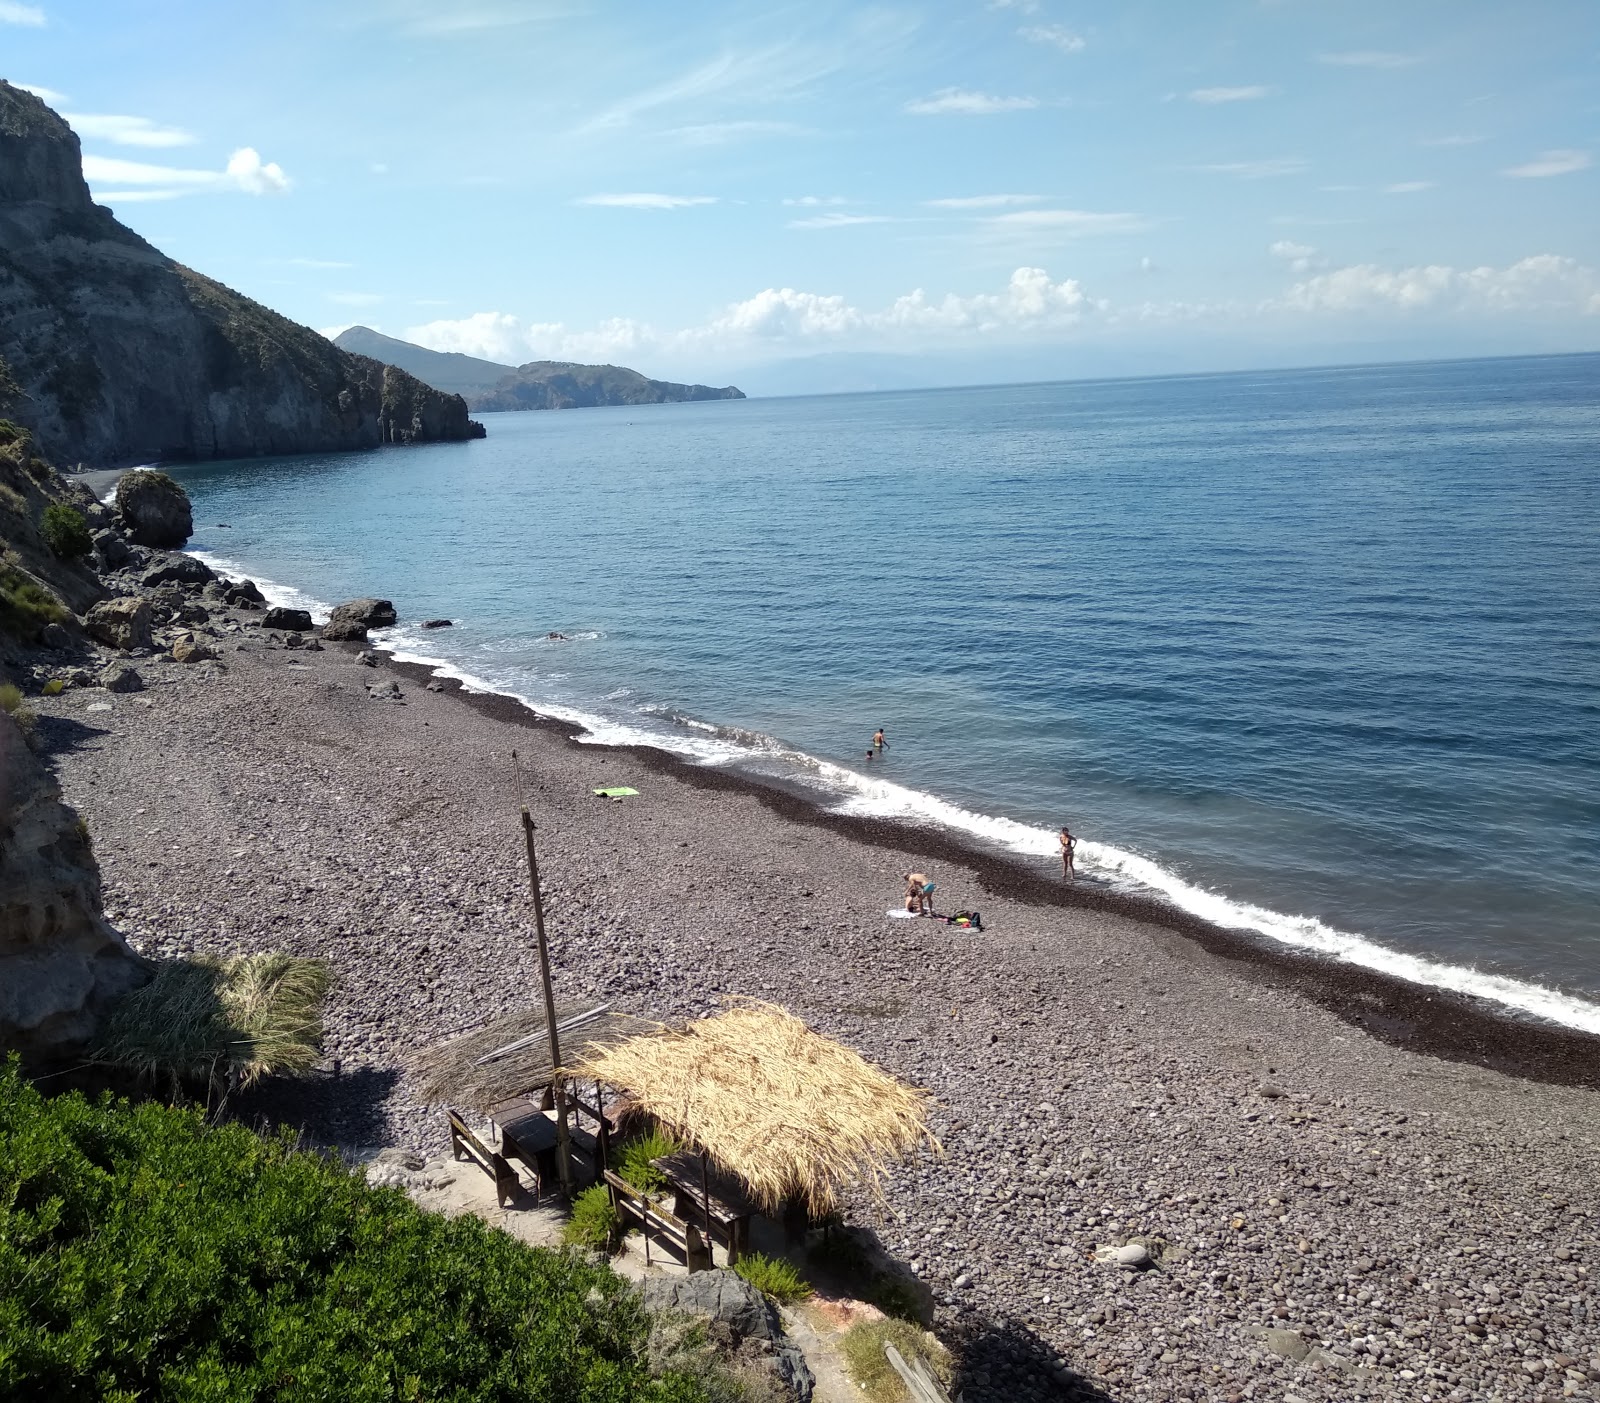 Spiaggia Valle Muria'in fotoğrafı gri kum ve çakıl yüzey ile